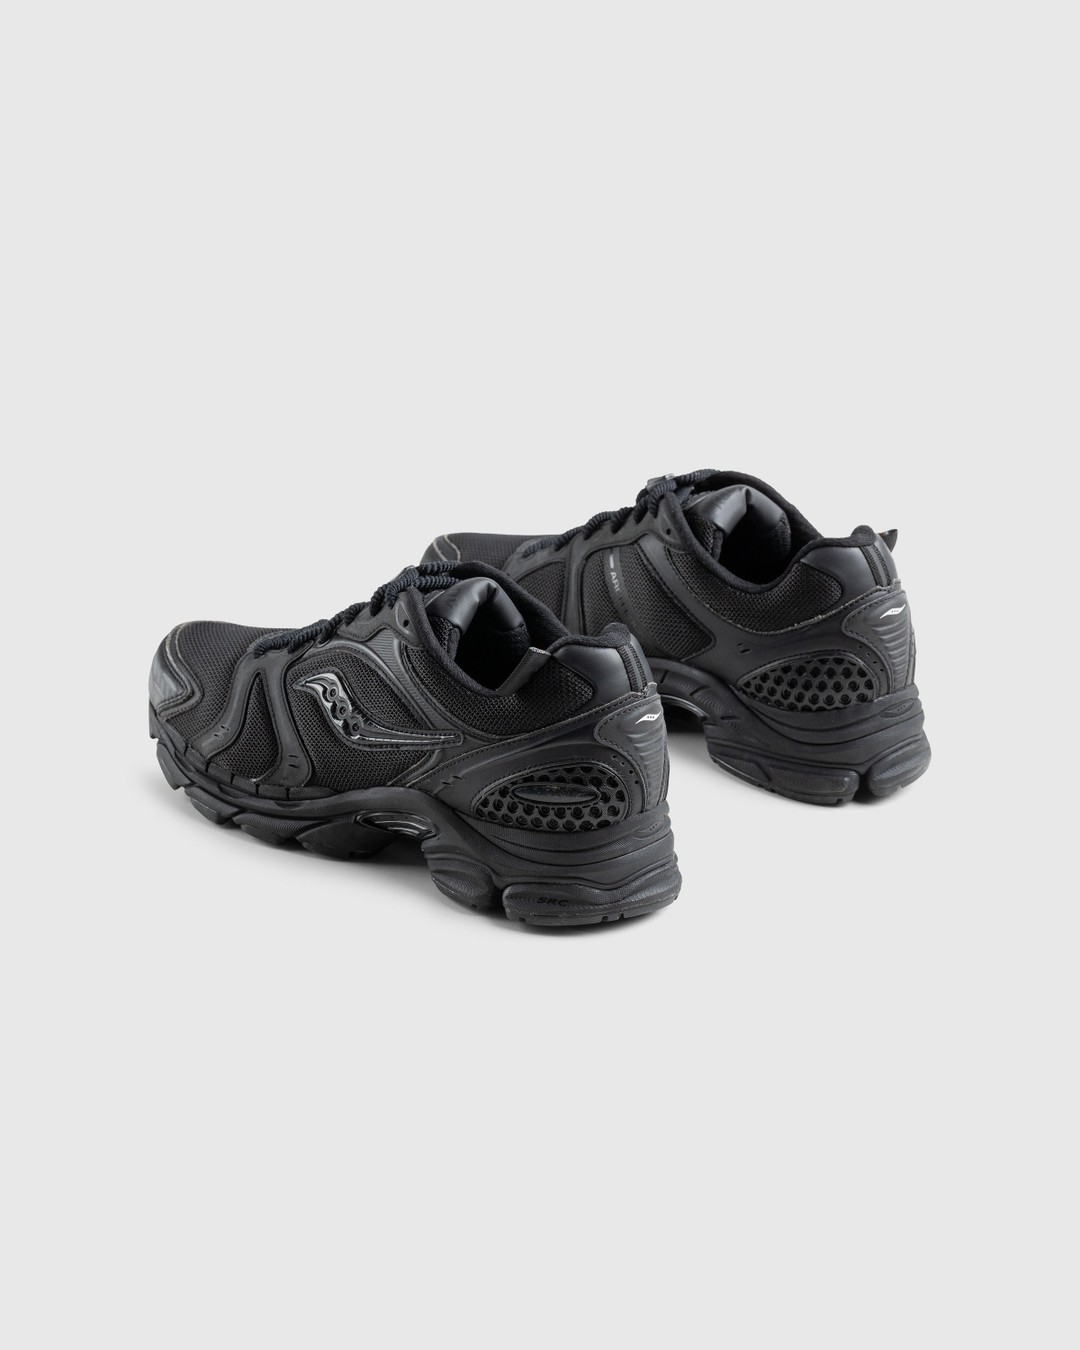 Saucony – ProGrid Triumph 4 Black - Sneakers - Black - Image 3